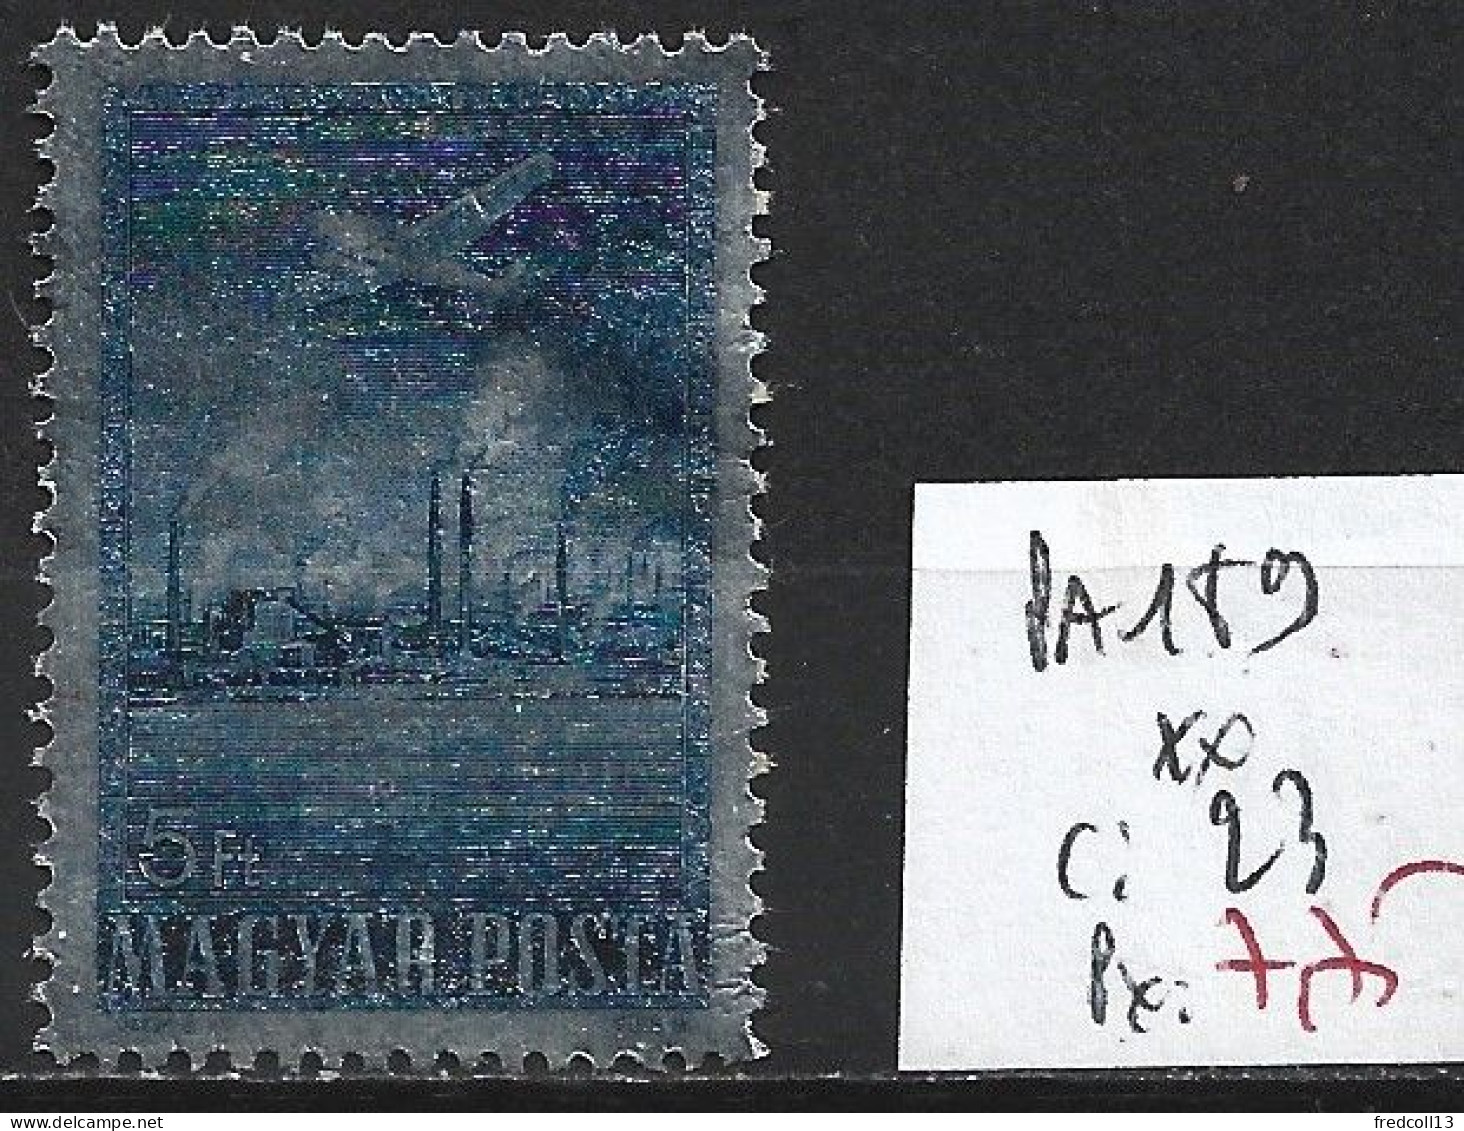 HONGRIE PA 189 ** Côte 23 € - Unused Stamps